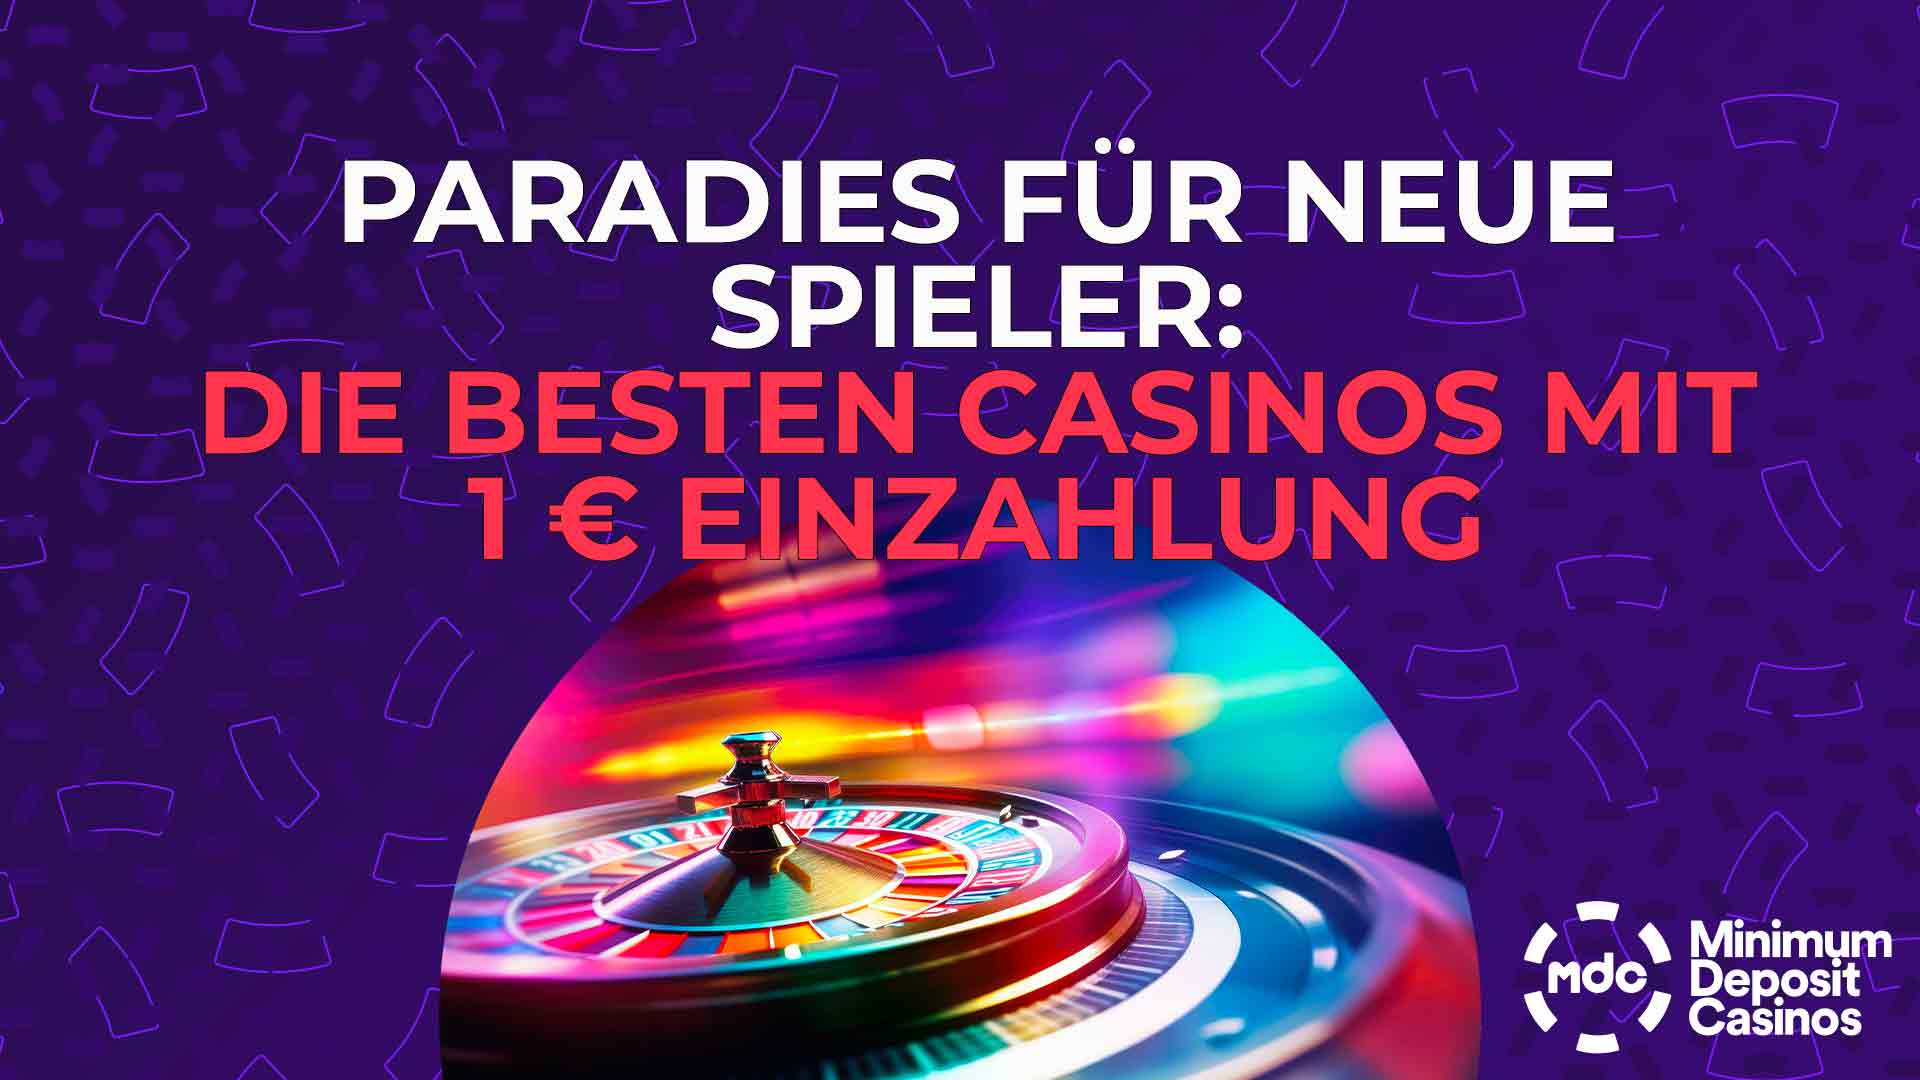 Paradies für neue Spieler - Die besten Casinos mit 1 € Einzahlung